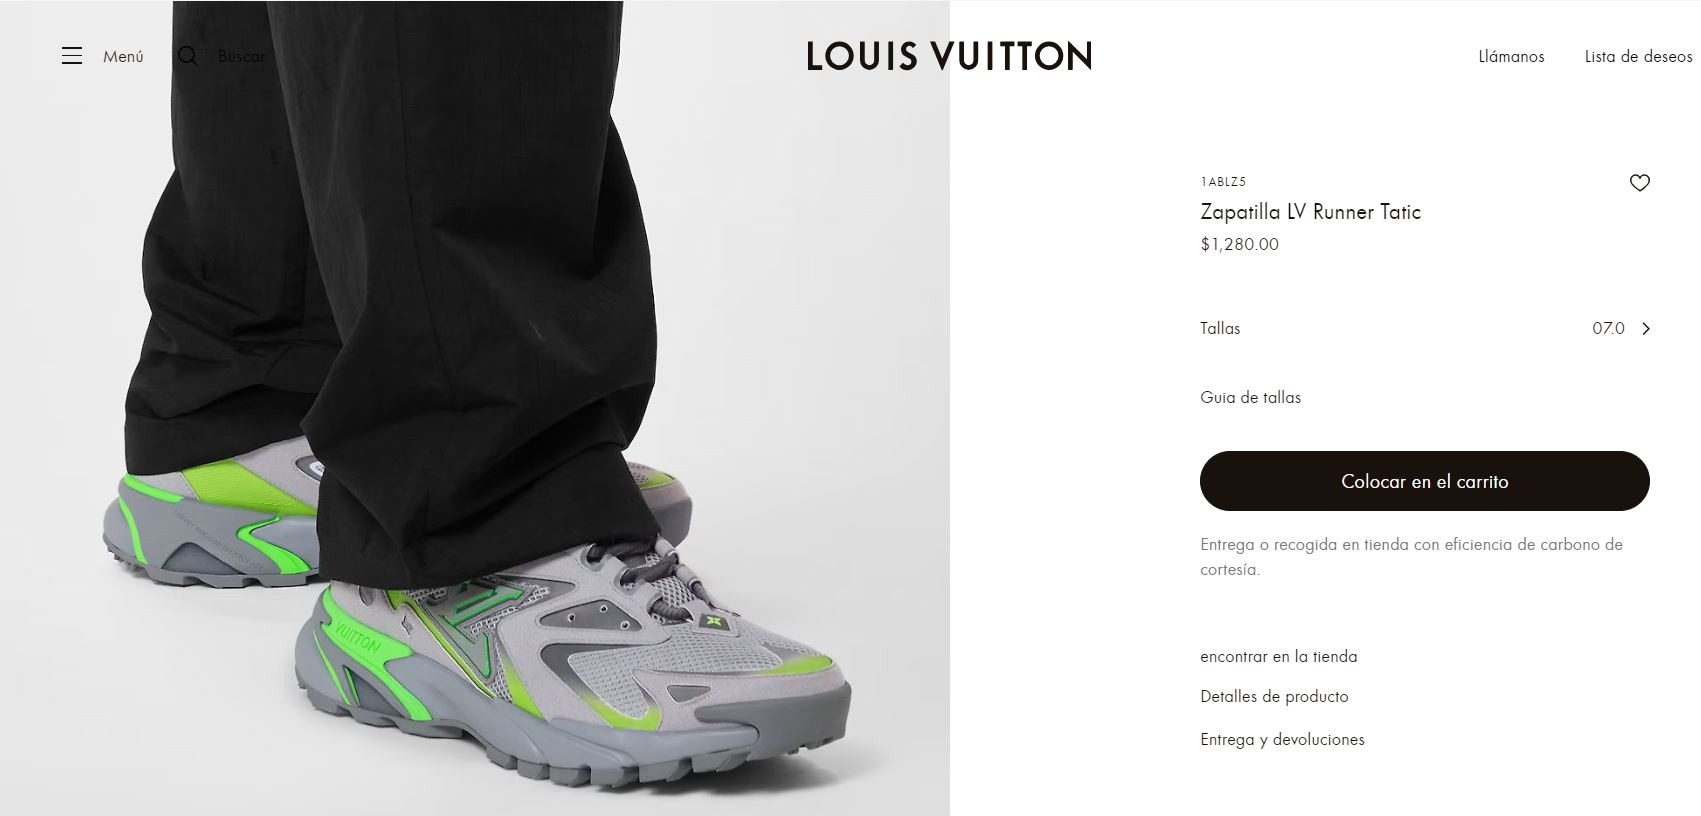 La zapatillas de Paolo Guerrero son marca Luis Vuitton y su valor es de $1280 dólares/Foto: Louis Vuitton